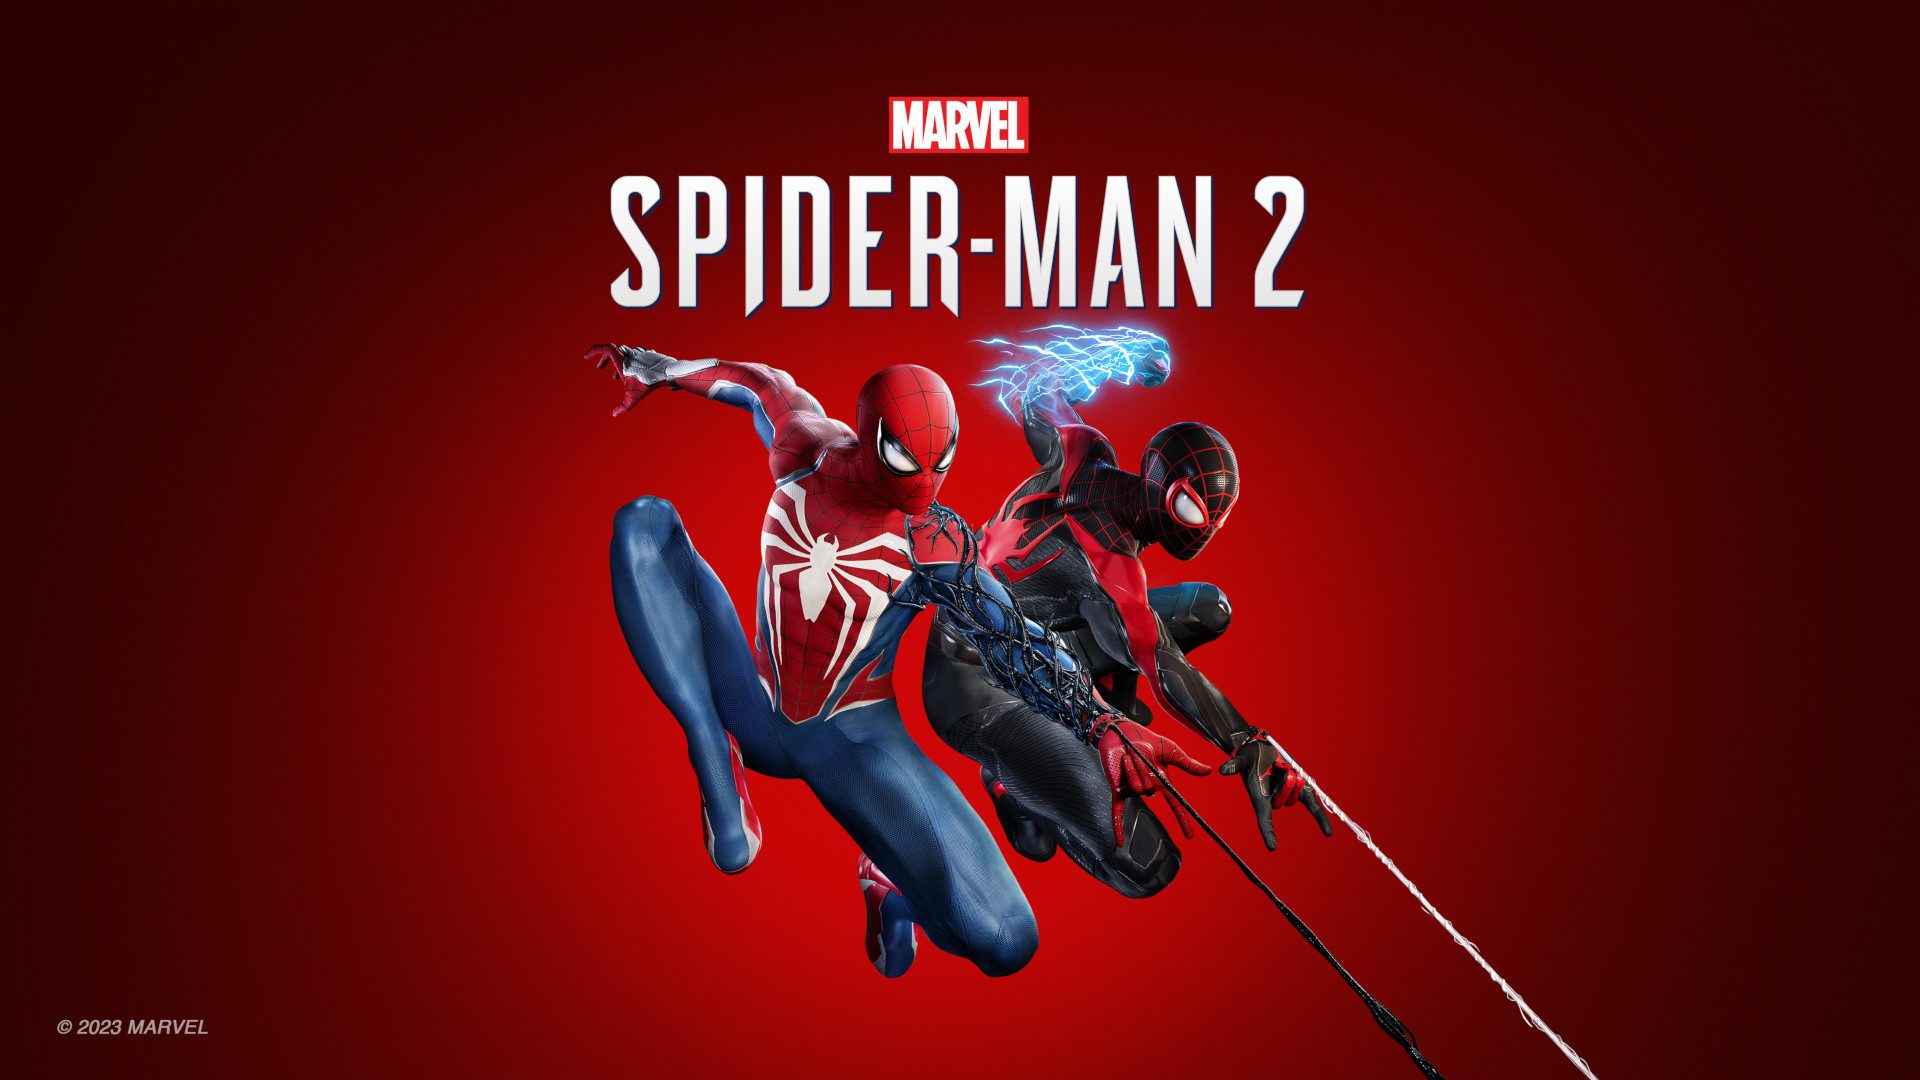 Marvel’s Spider-Man 2 arriva solo su PS5 il 20 ottobre, Collector’s e Digital Deluxe Edition – Dettagli PlayStation.